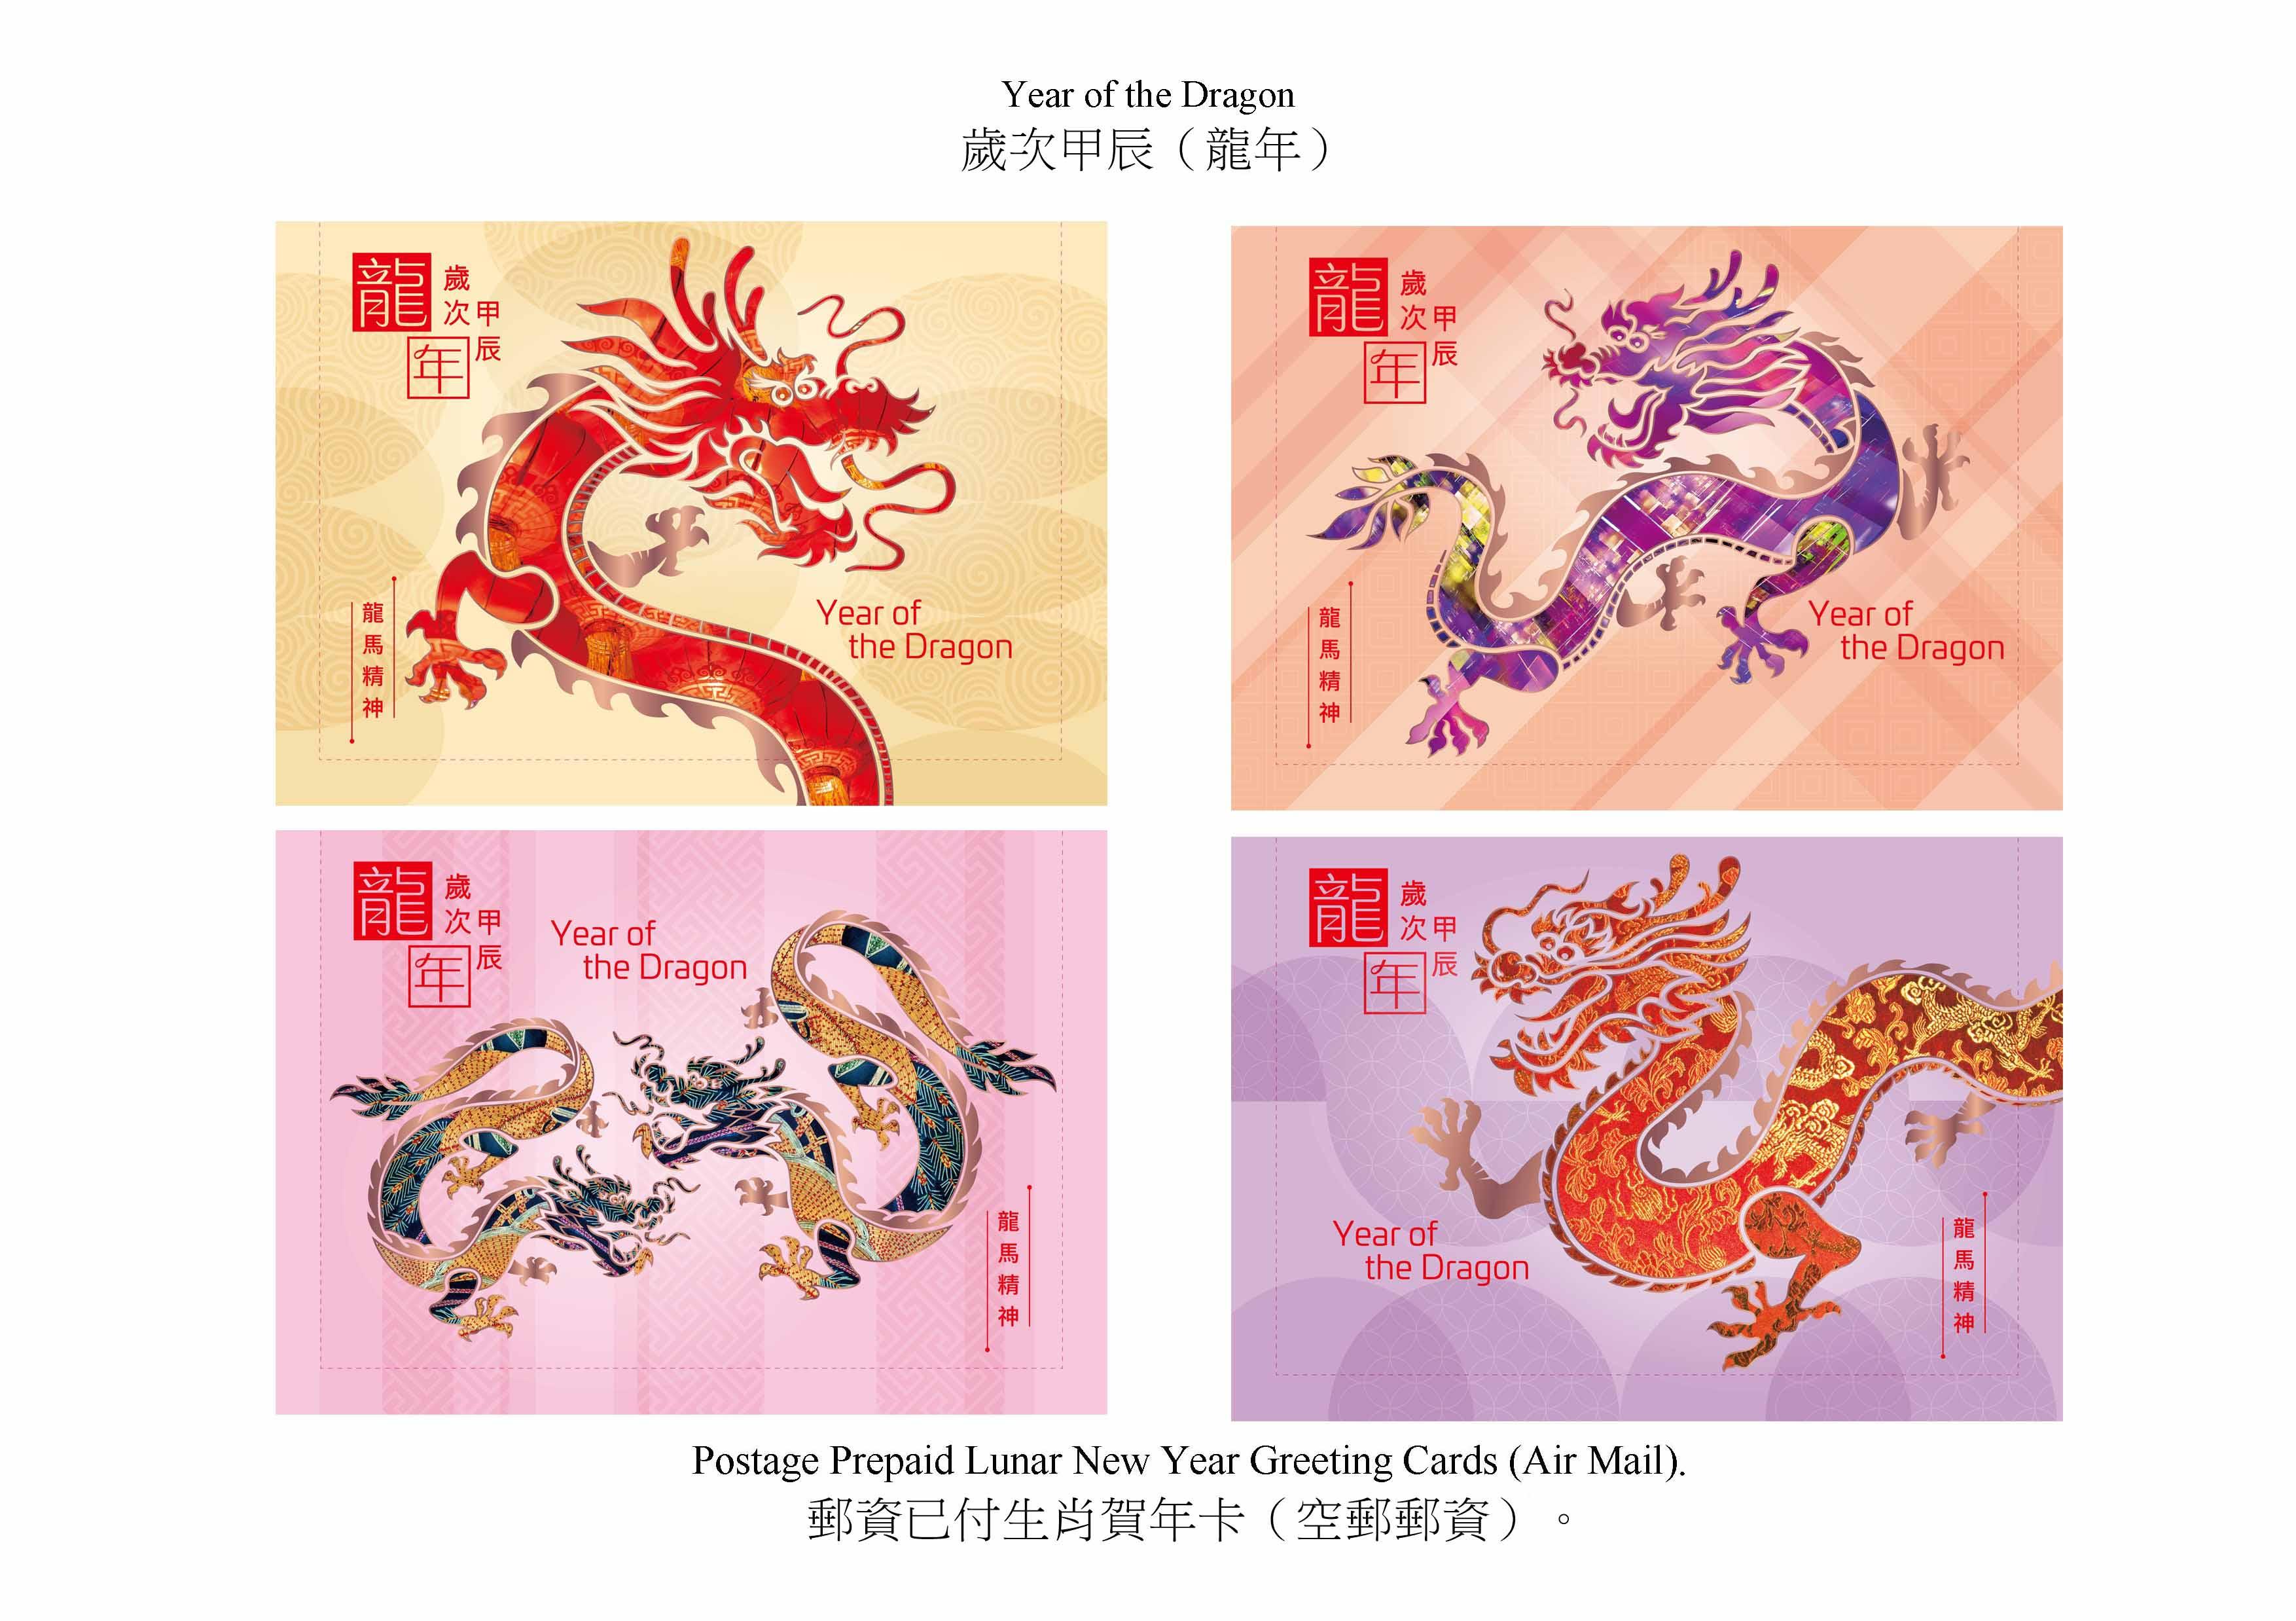 香港邮政二○二四年一月五日（星期五）发行以「岁次甲辰（龙年）」为题的特别邮票及相关集邮品。图示邮资已付生肖贺年卡（空邮邮资）。